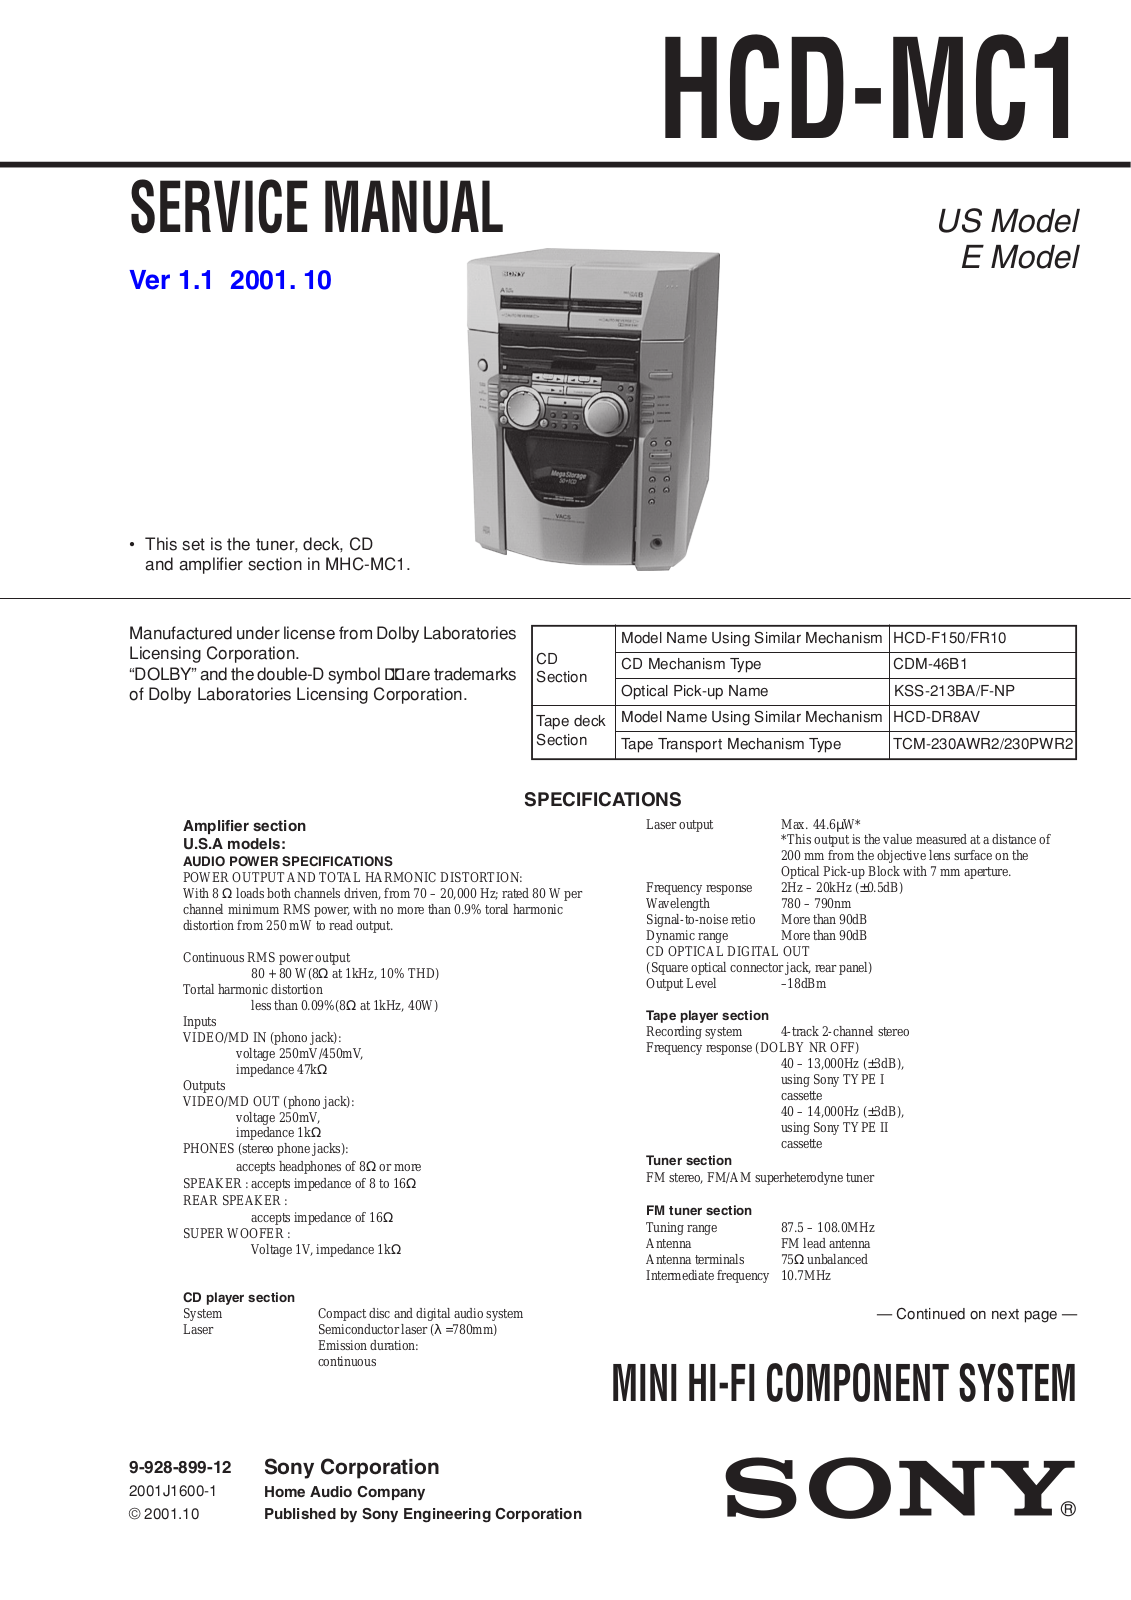 Sony HCDMC-1 Service manual